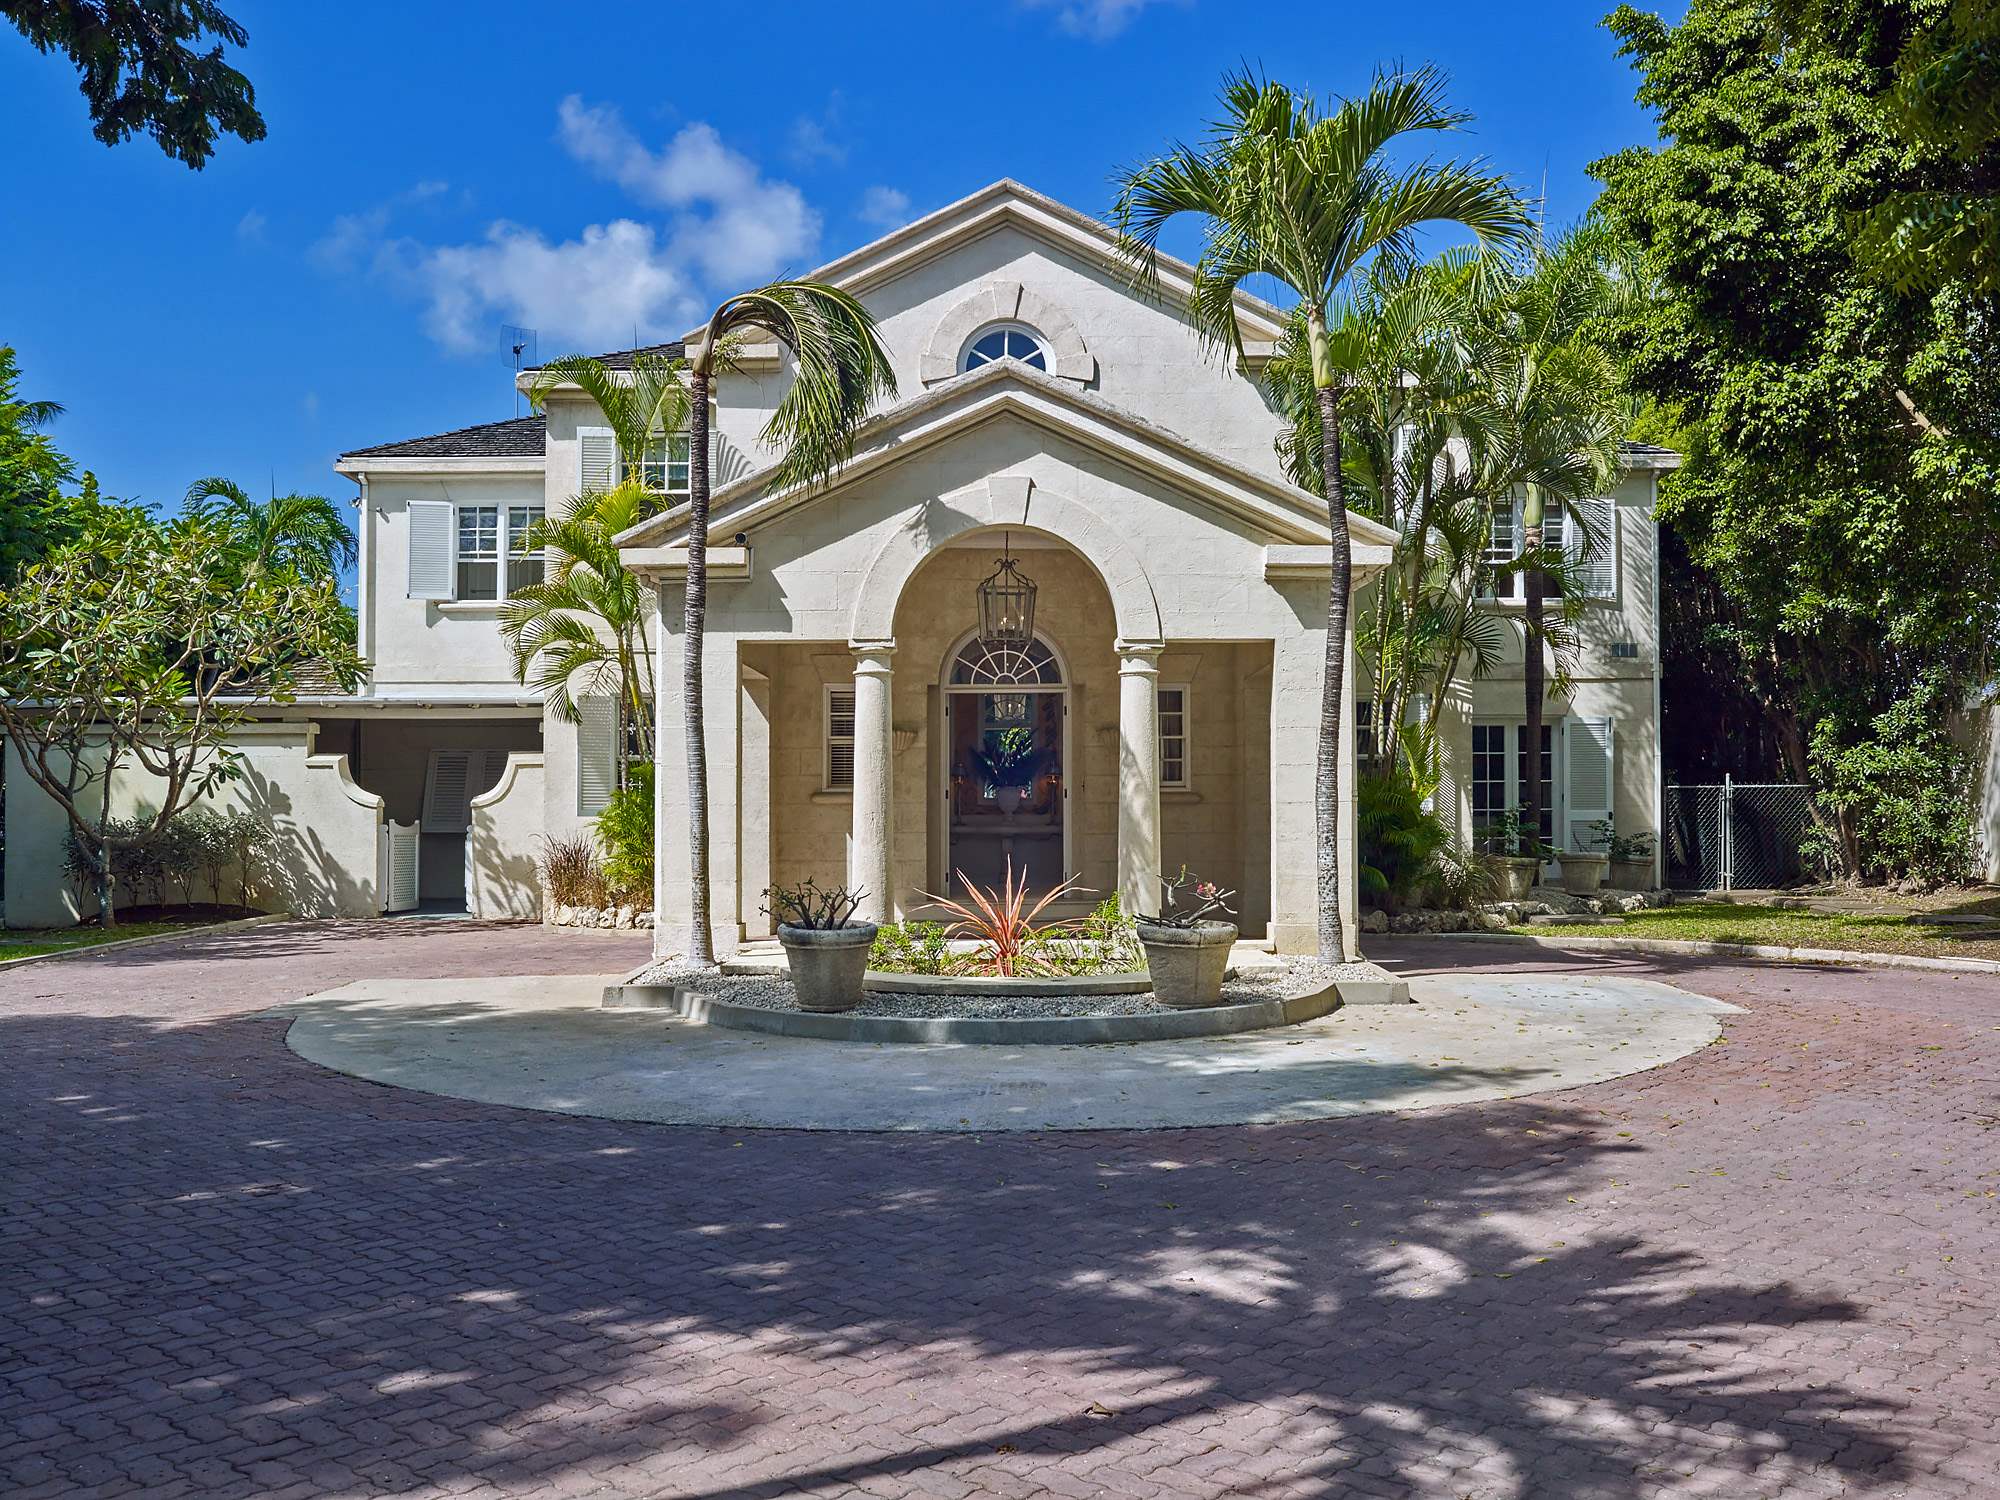 New Mansion, 4 bedroom villa in St. James & West Coast, Barbados Photo #6